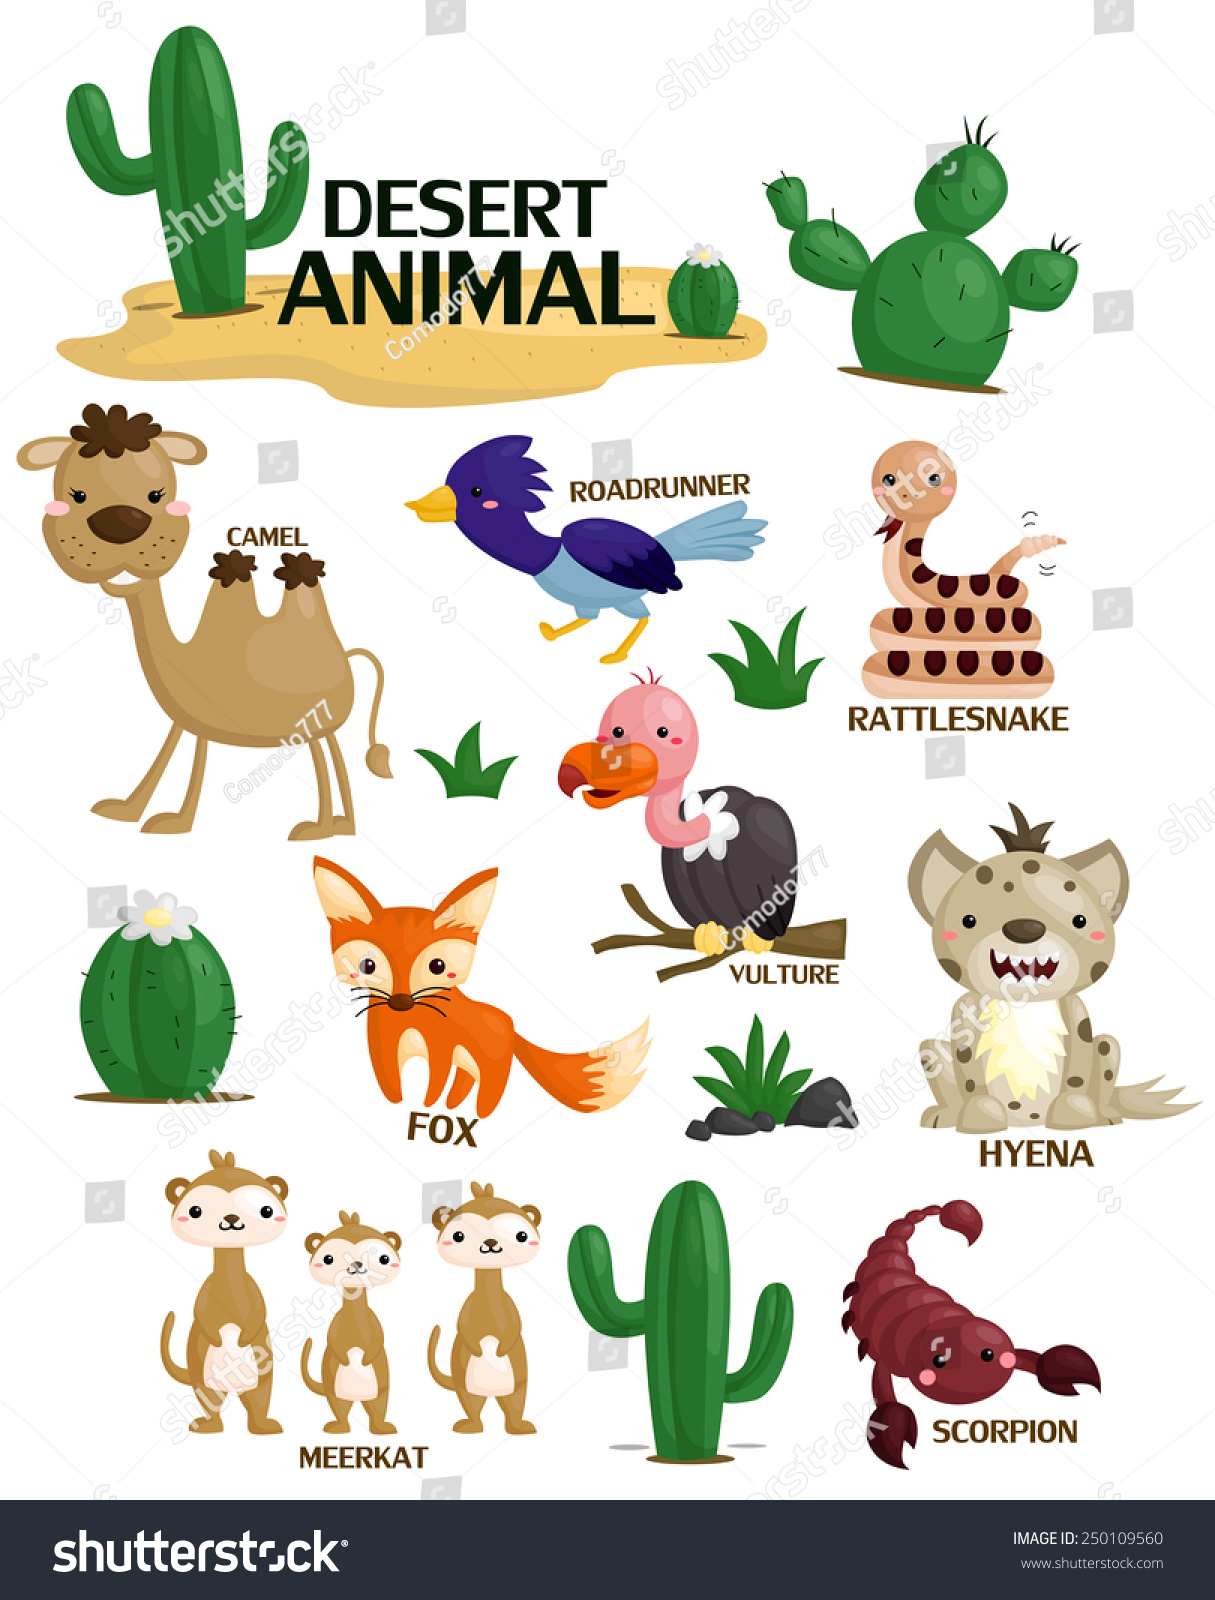 Desert Animal Vector Set 250109560 Shutterstock